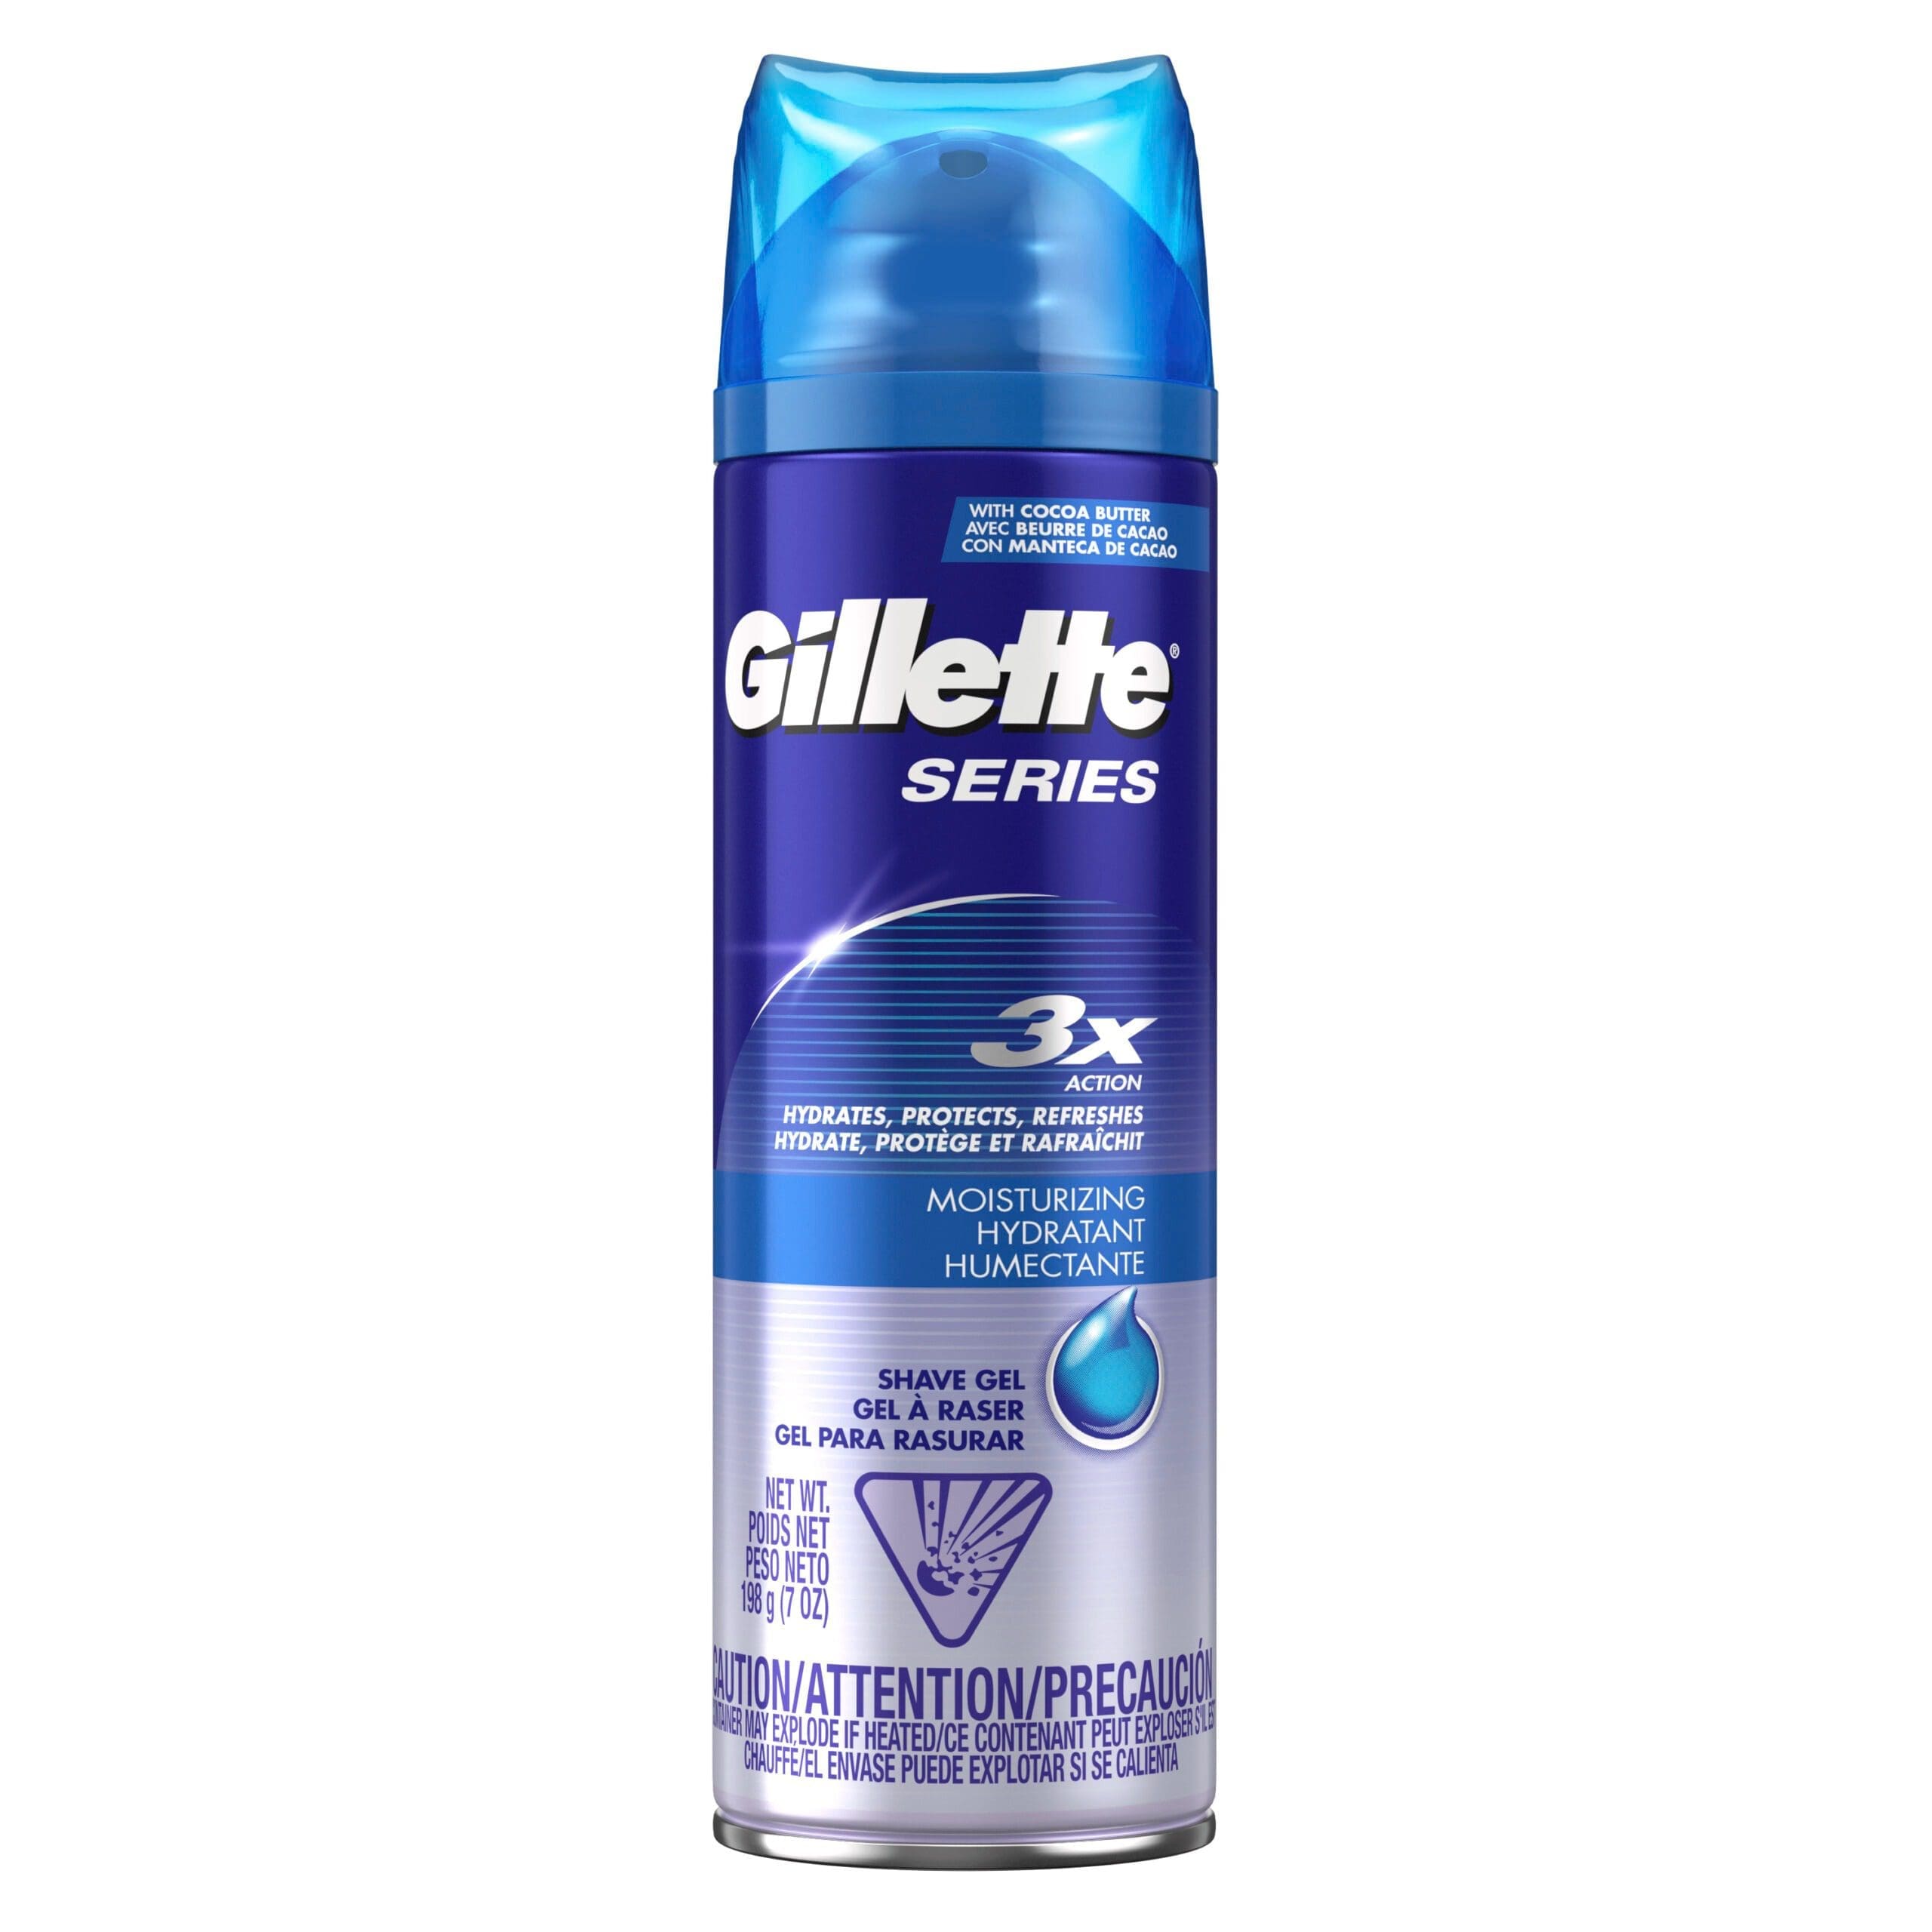 Gillette Shave Gel Moisturizing 198G